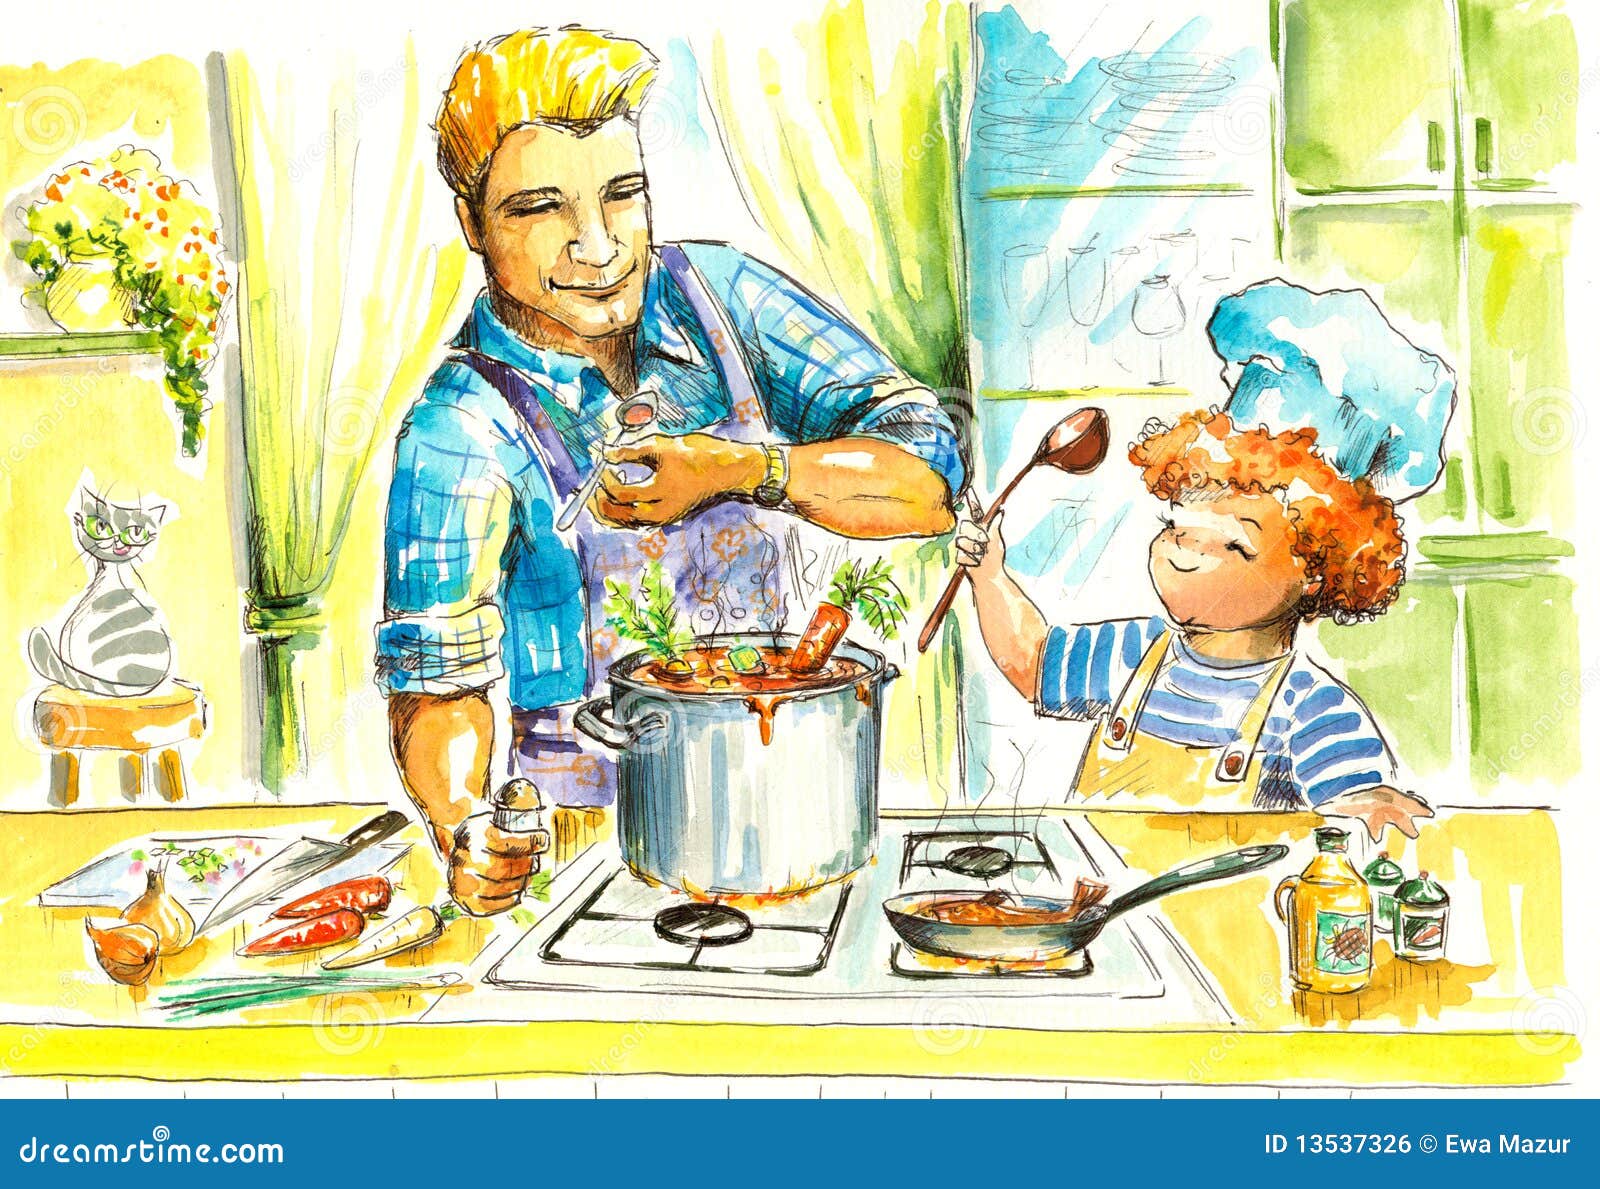 Маму на кухне рассказ. Мамин помощник рисунок. Папа готовит суп. Иллюстрация мальчик на кухне. Сюжетная картина семейный ужи.